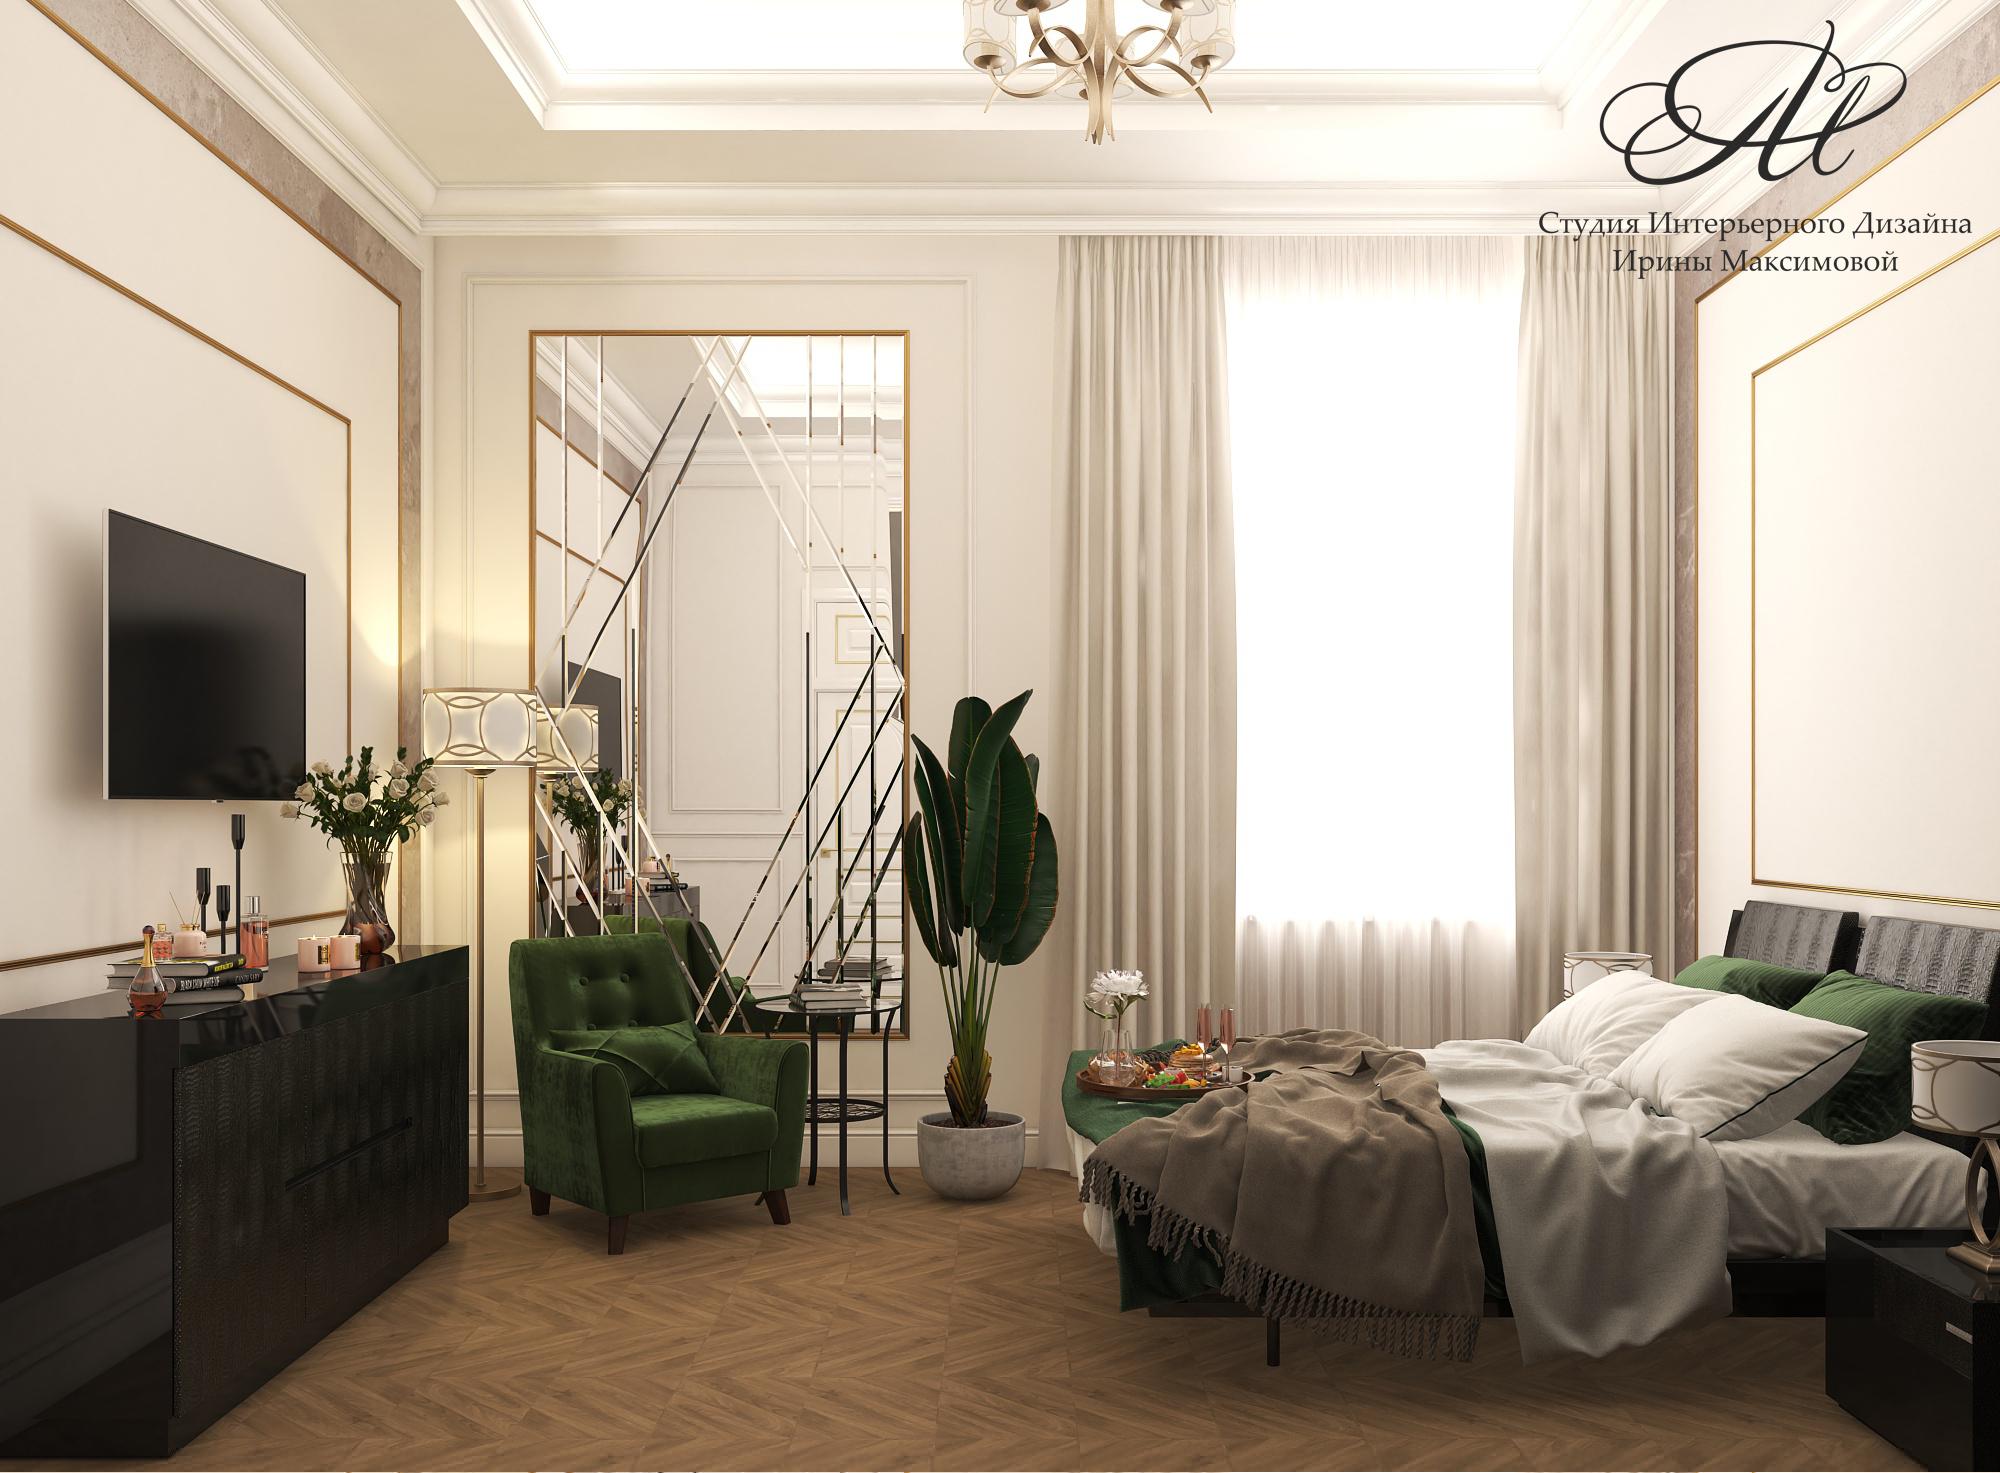 Интерьер спальни cветильниками над кроватью в стиле лофт, в восточном стиле, ампире и готике